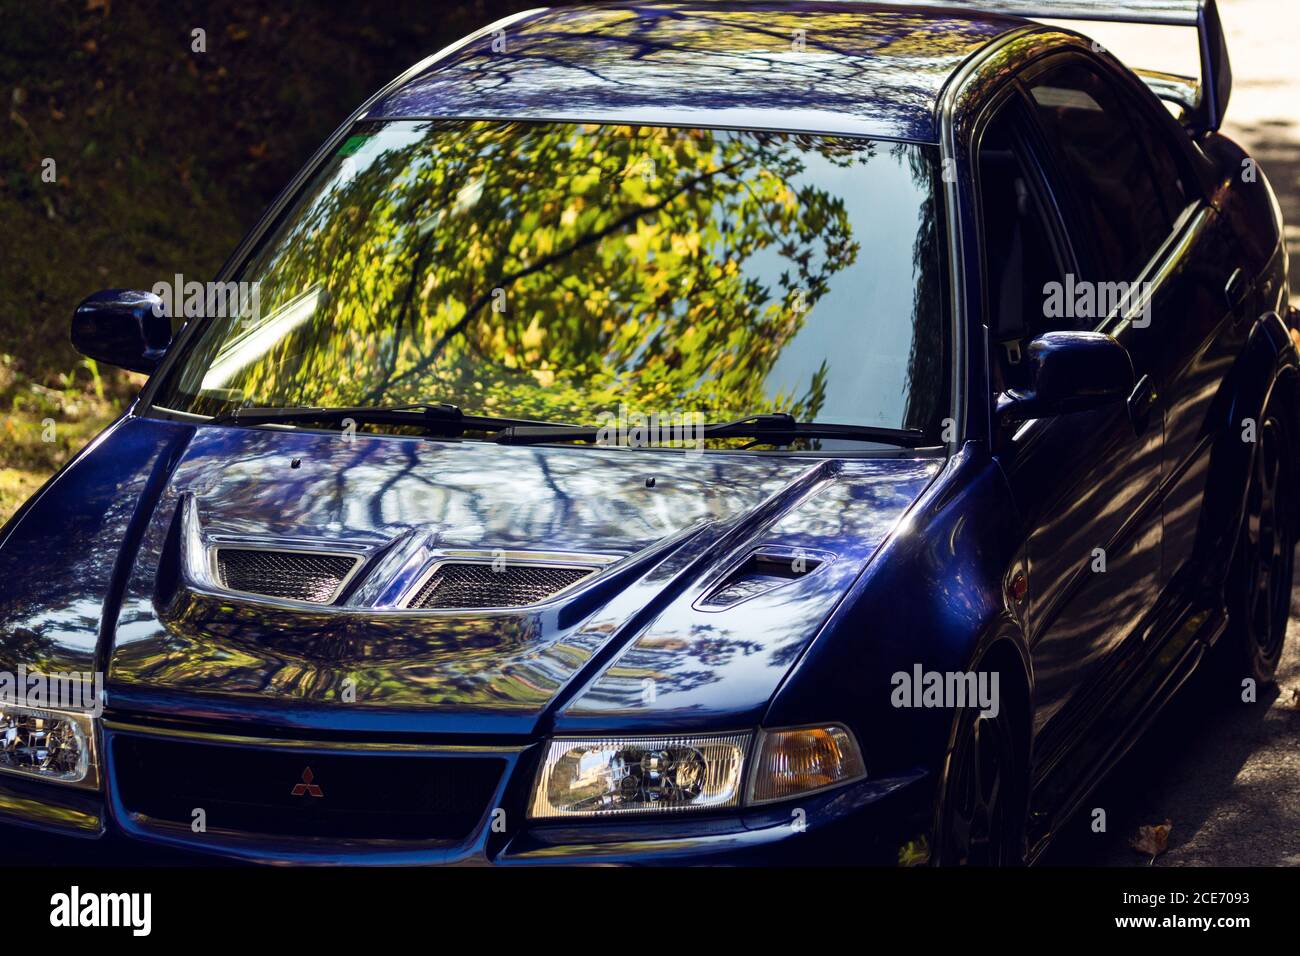 Mitsubishi lancer Evolution 7 Ralliart Limited Edition, tourné dans un parc naturel entouré par la nature Banque D'Images